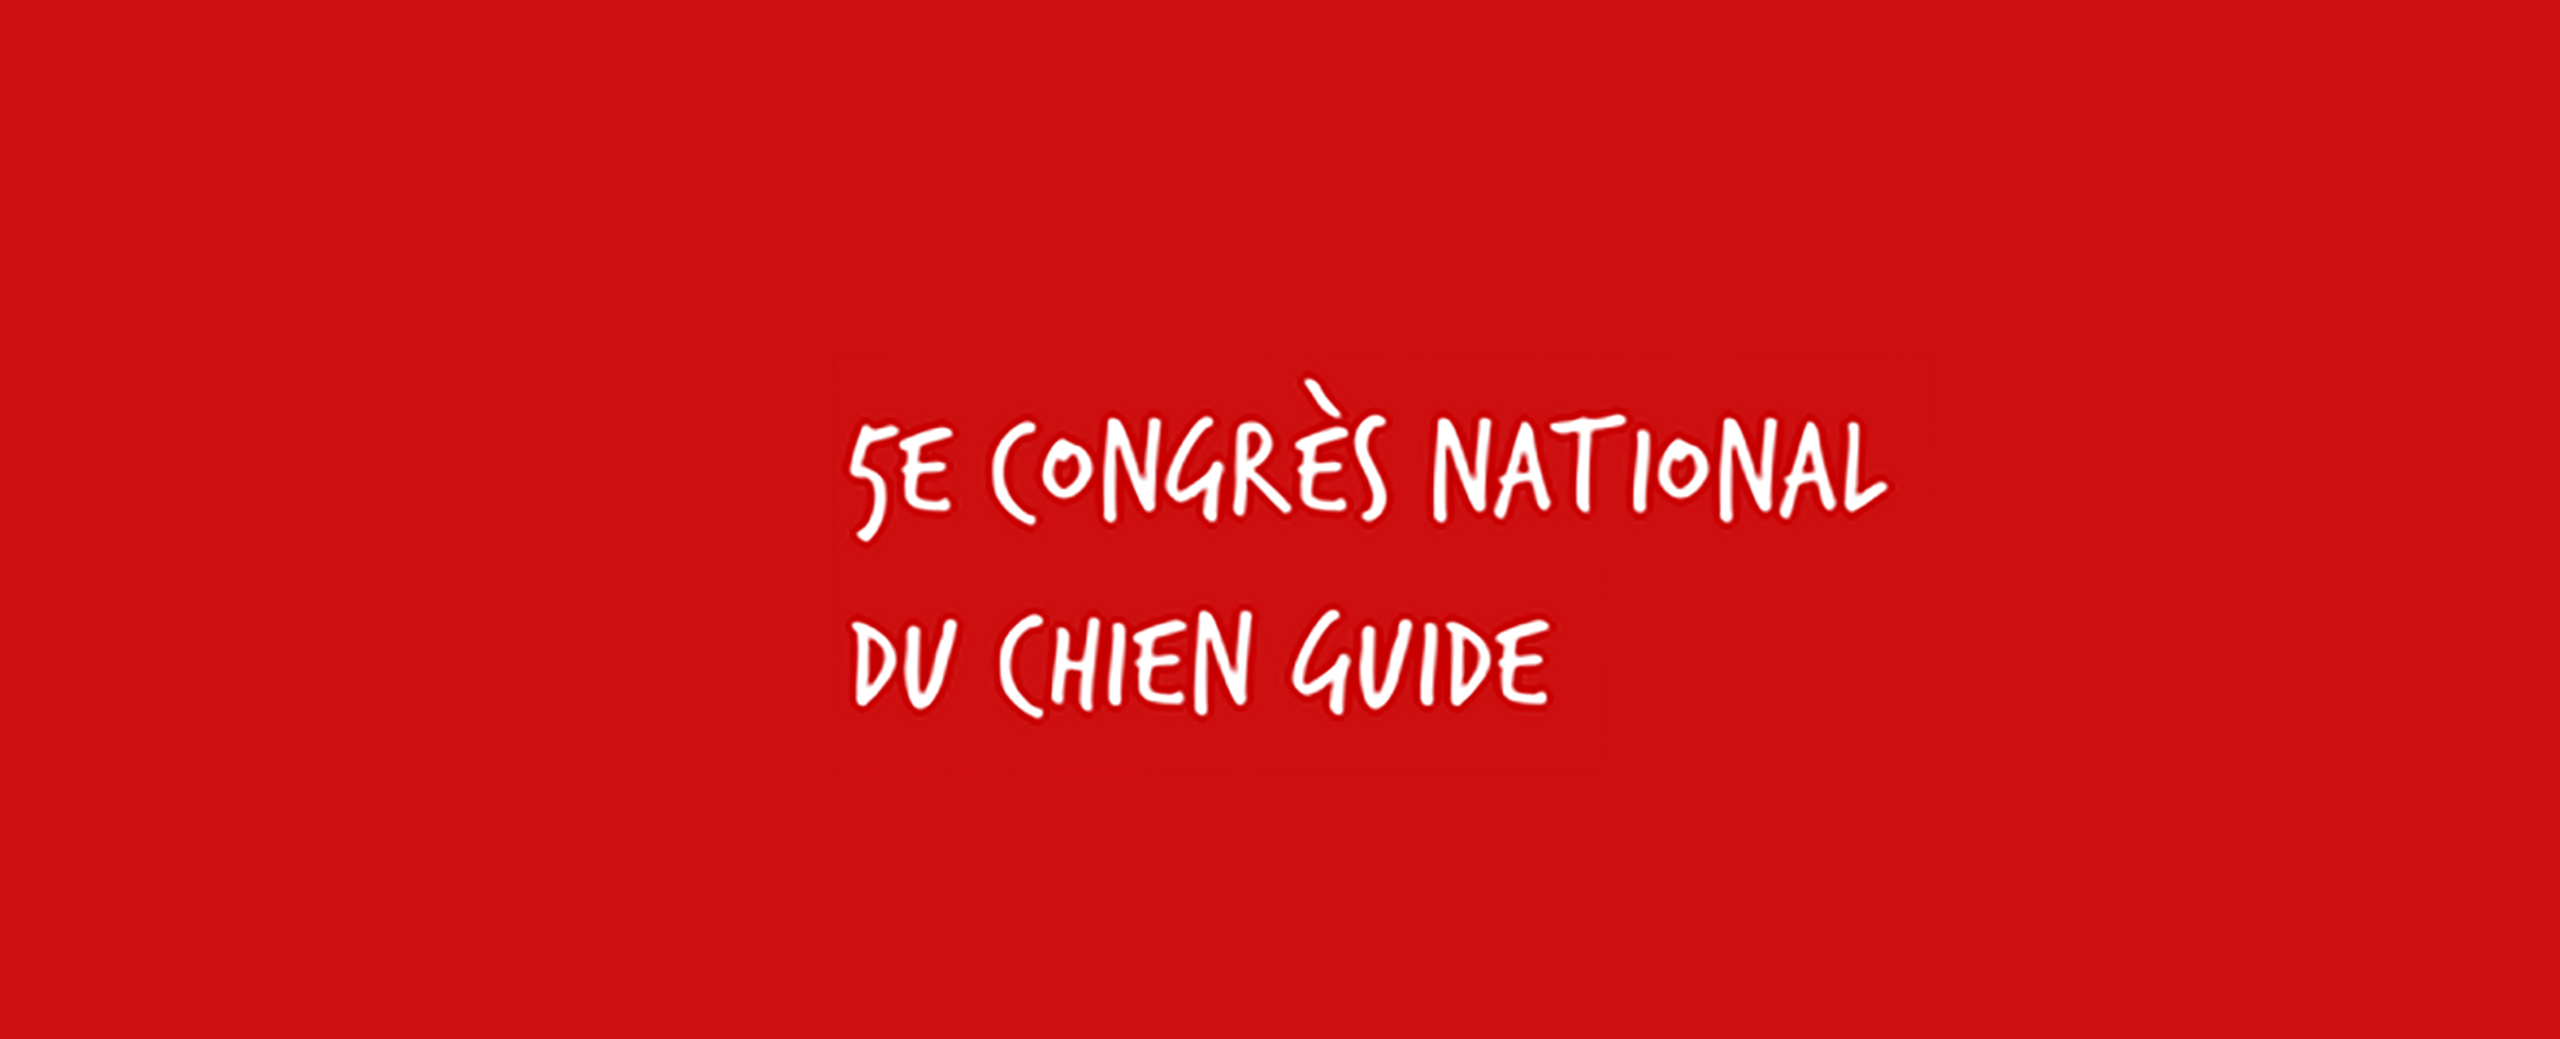 5ème édition du Congrès National du Chien Guide !